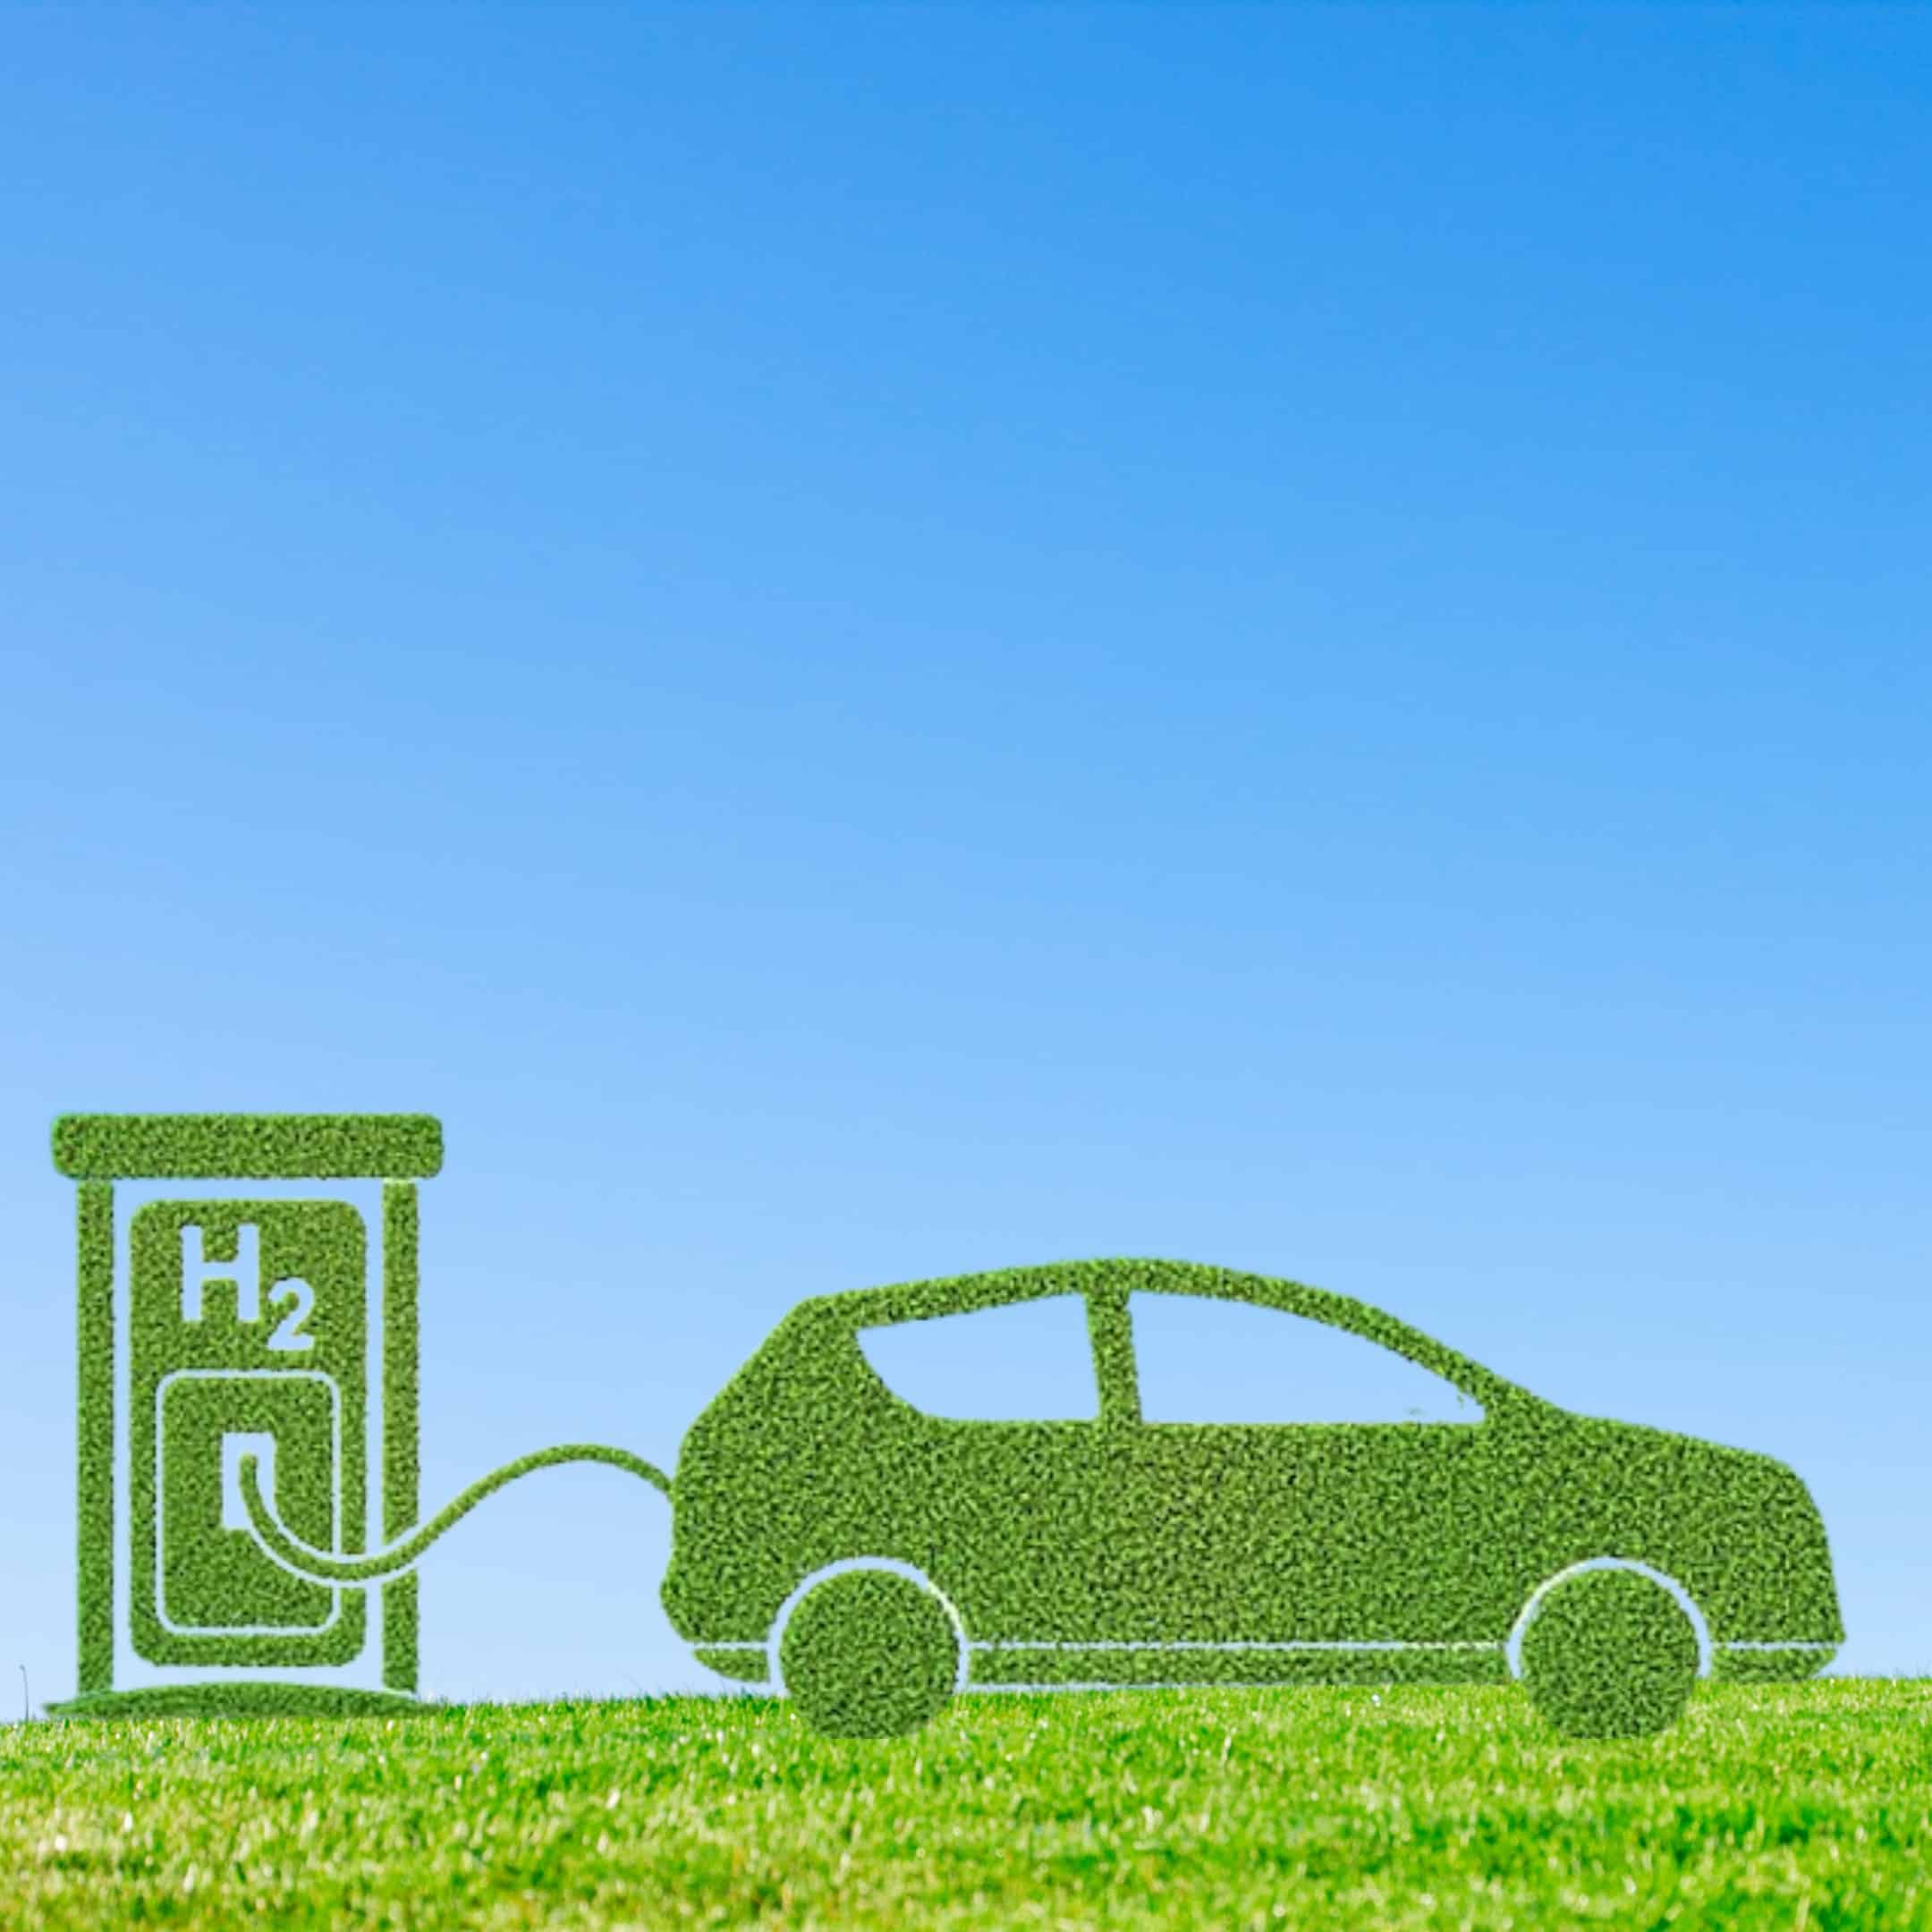 hidrogênio verde - carbono - energia - Air products